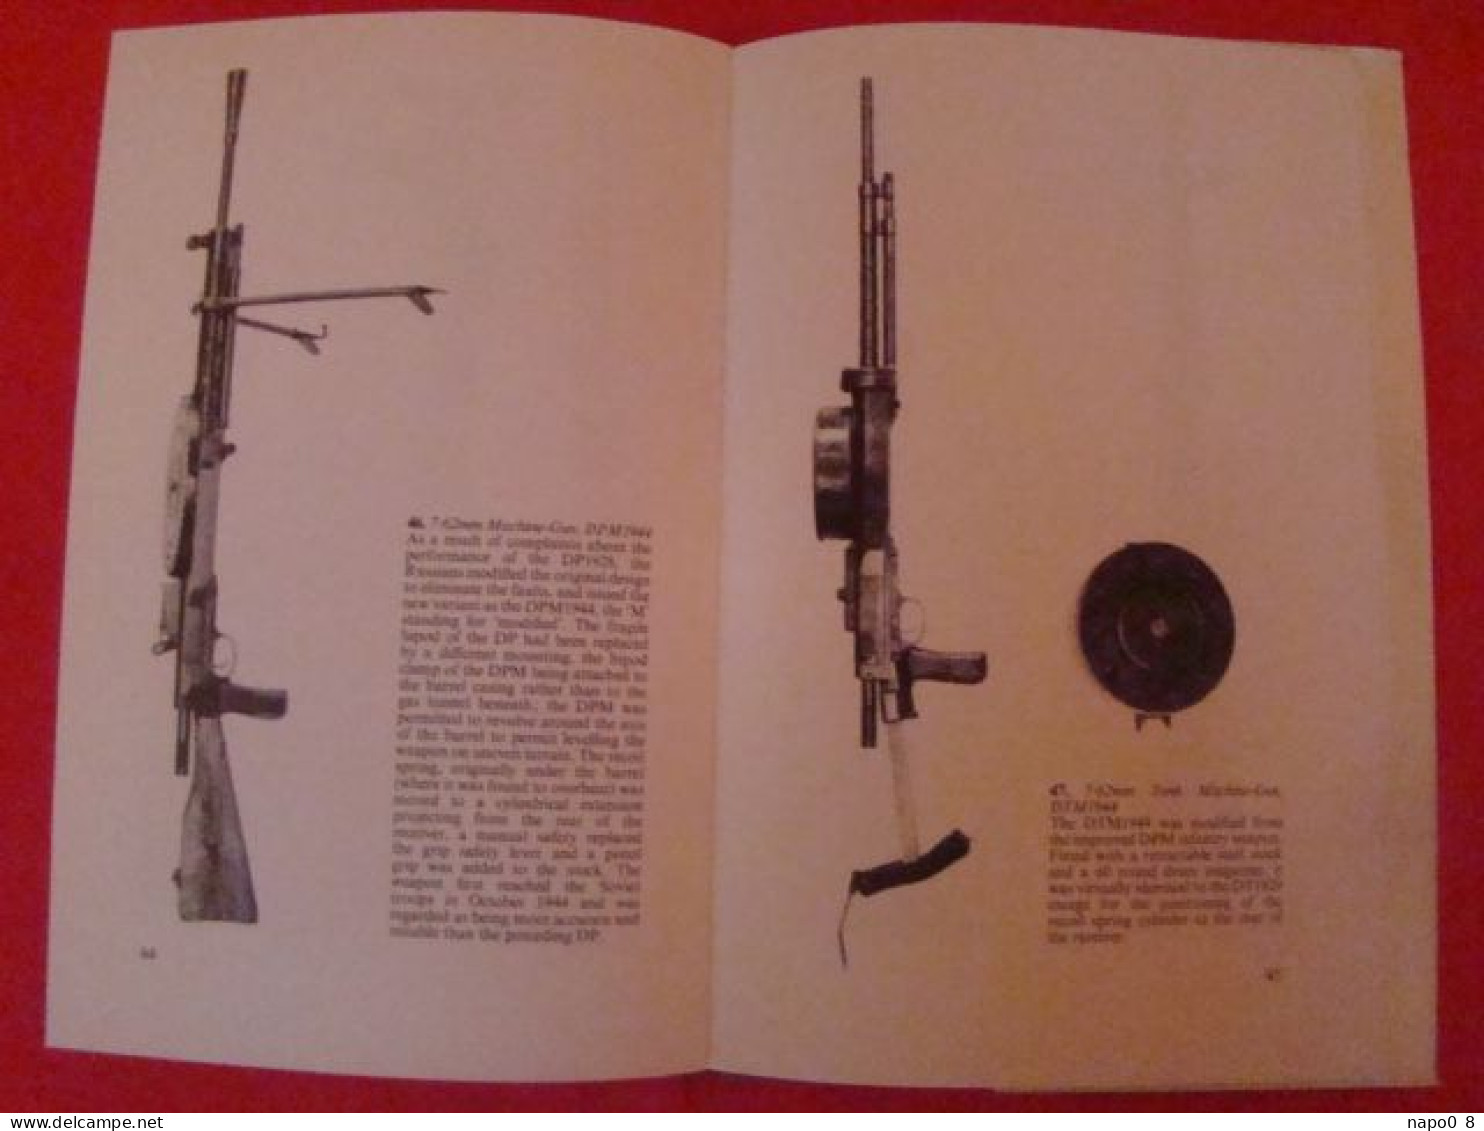 Russian Infantry Weapons of World War 2 " AJ Barker & John Walter "